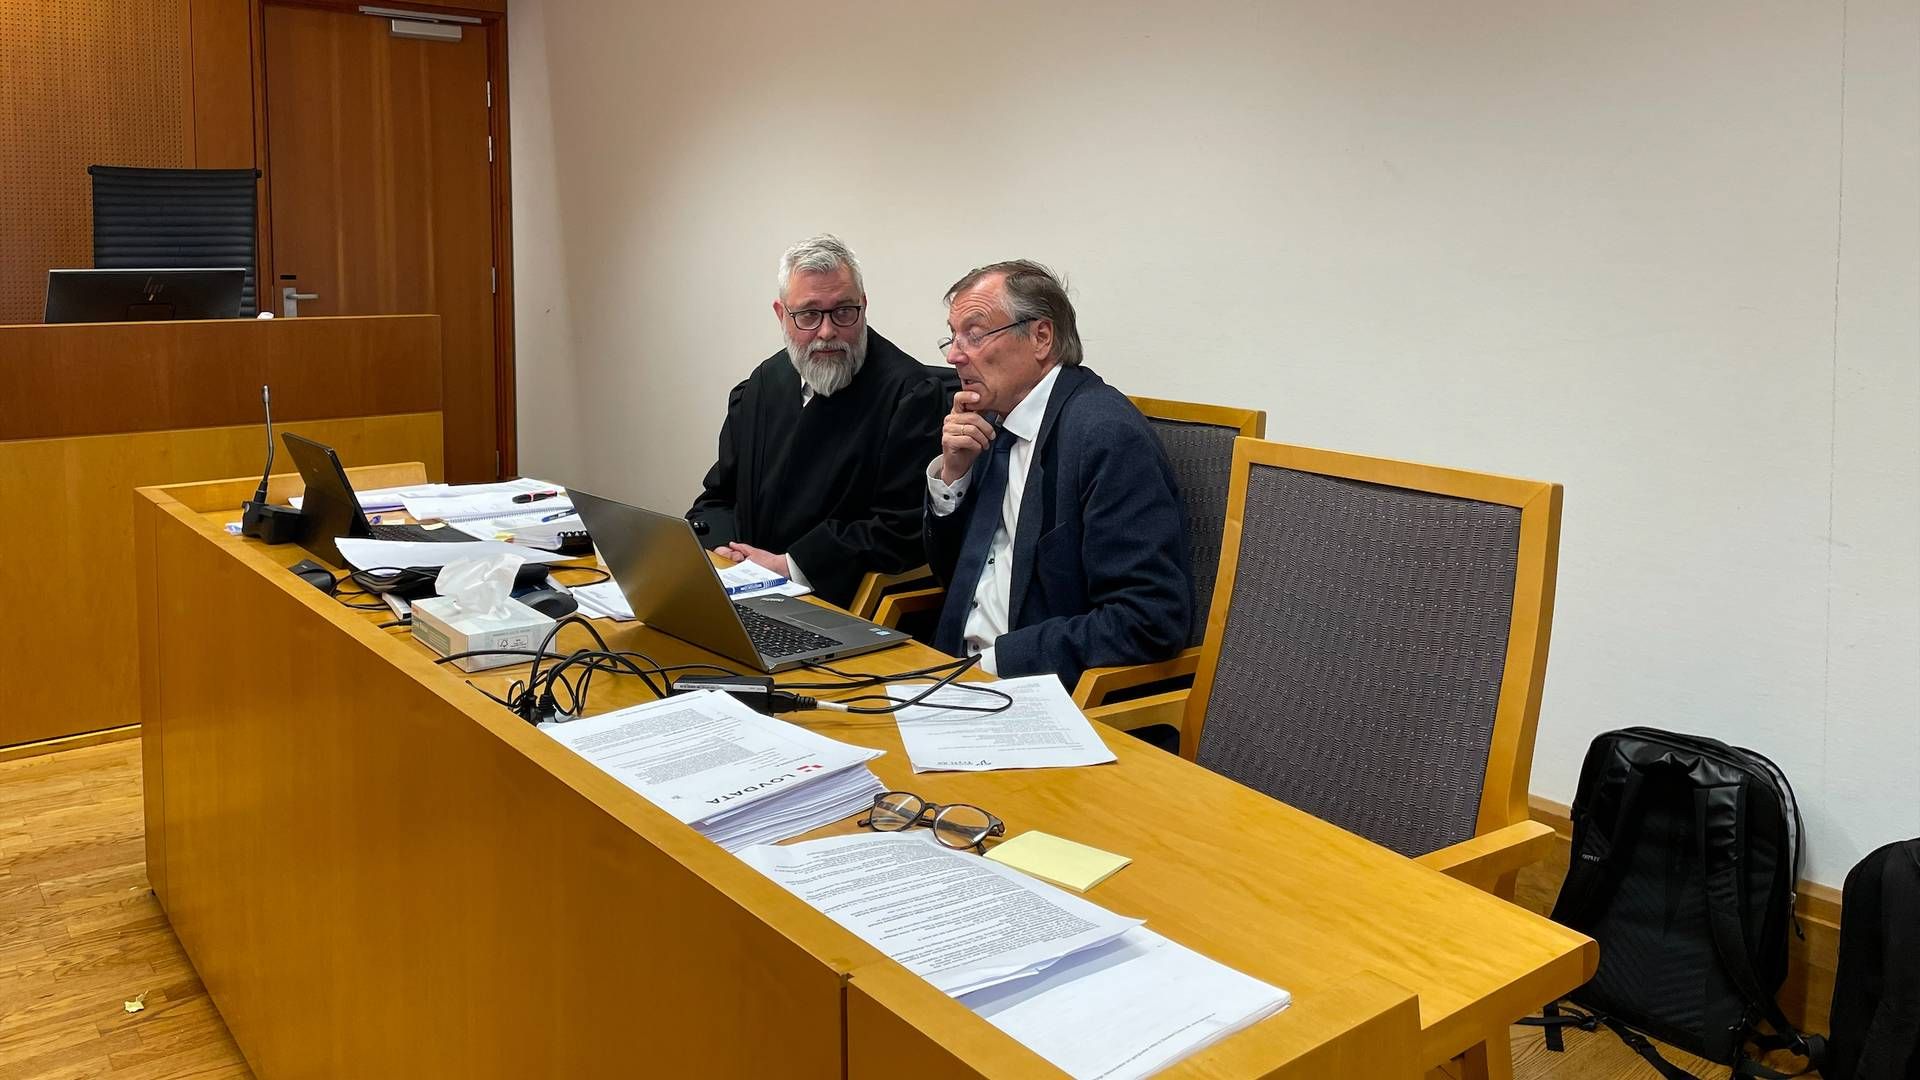 OMKAMP: Helge Tryti (t.h.) sammen med sin advokat Harald Holm Glad under rettssaken i tingretten i april. Nå er ankeforhandlingen berammet. | Foto: Stian Olsen/AdvokatWatch